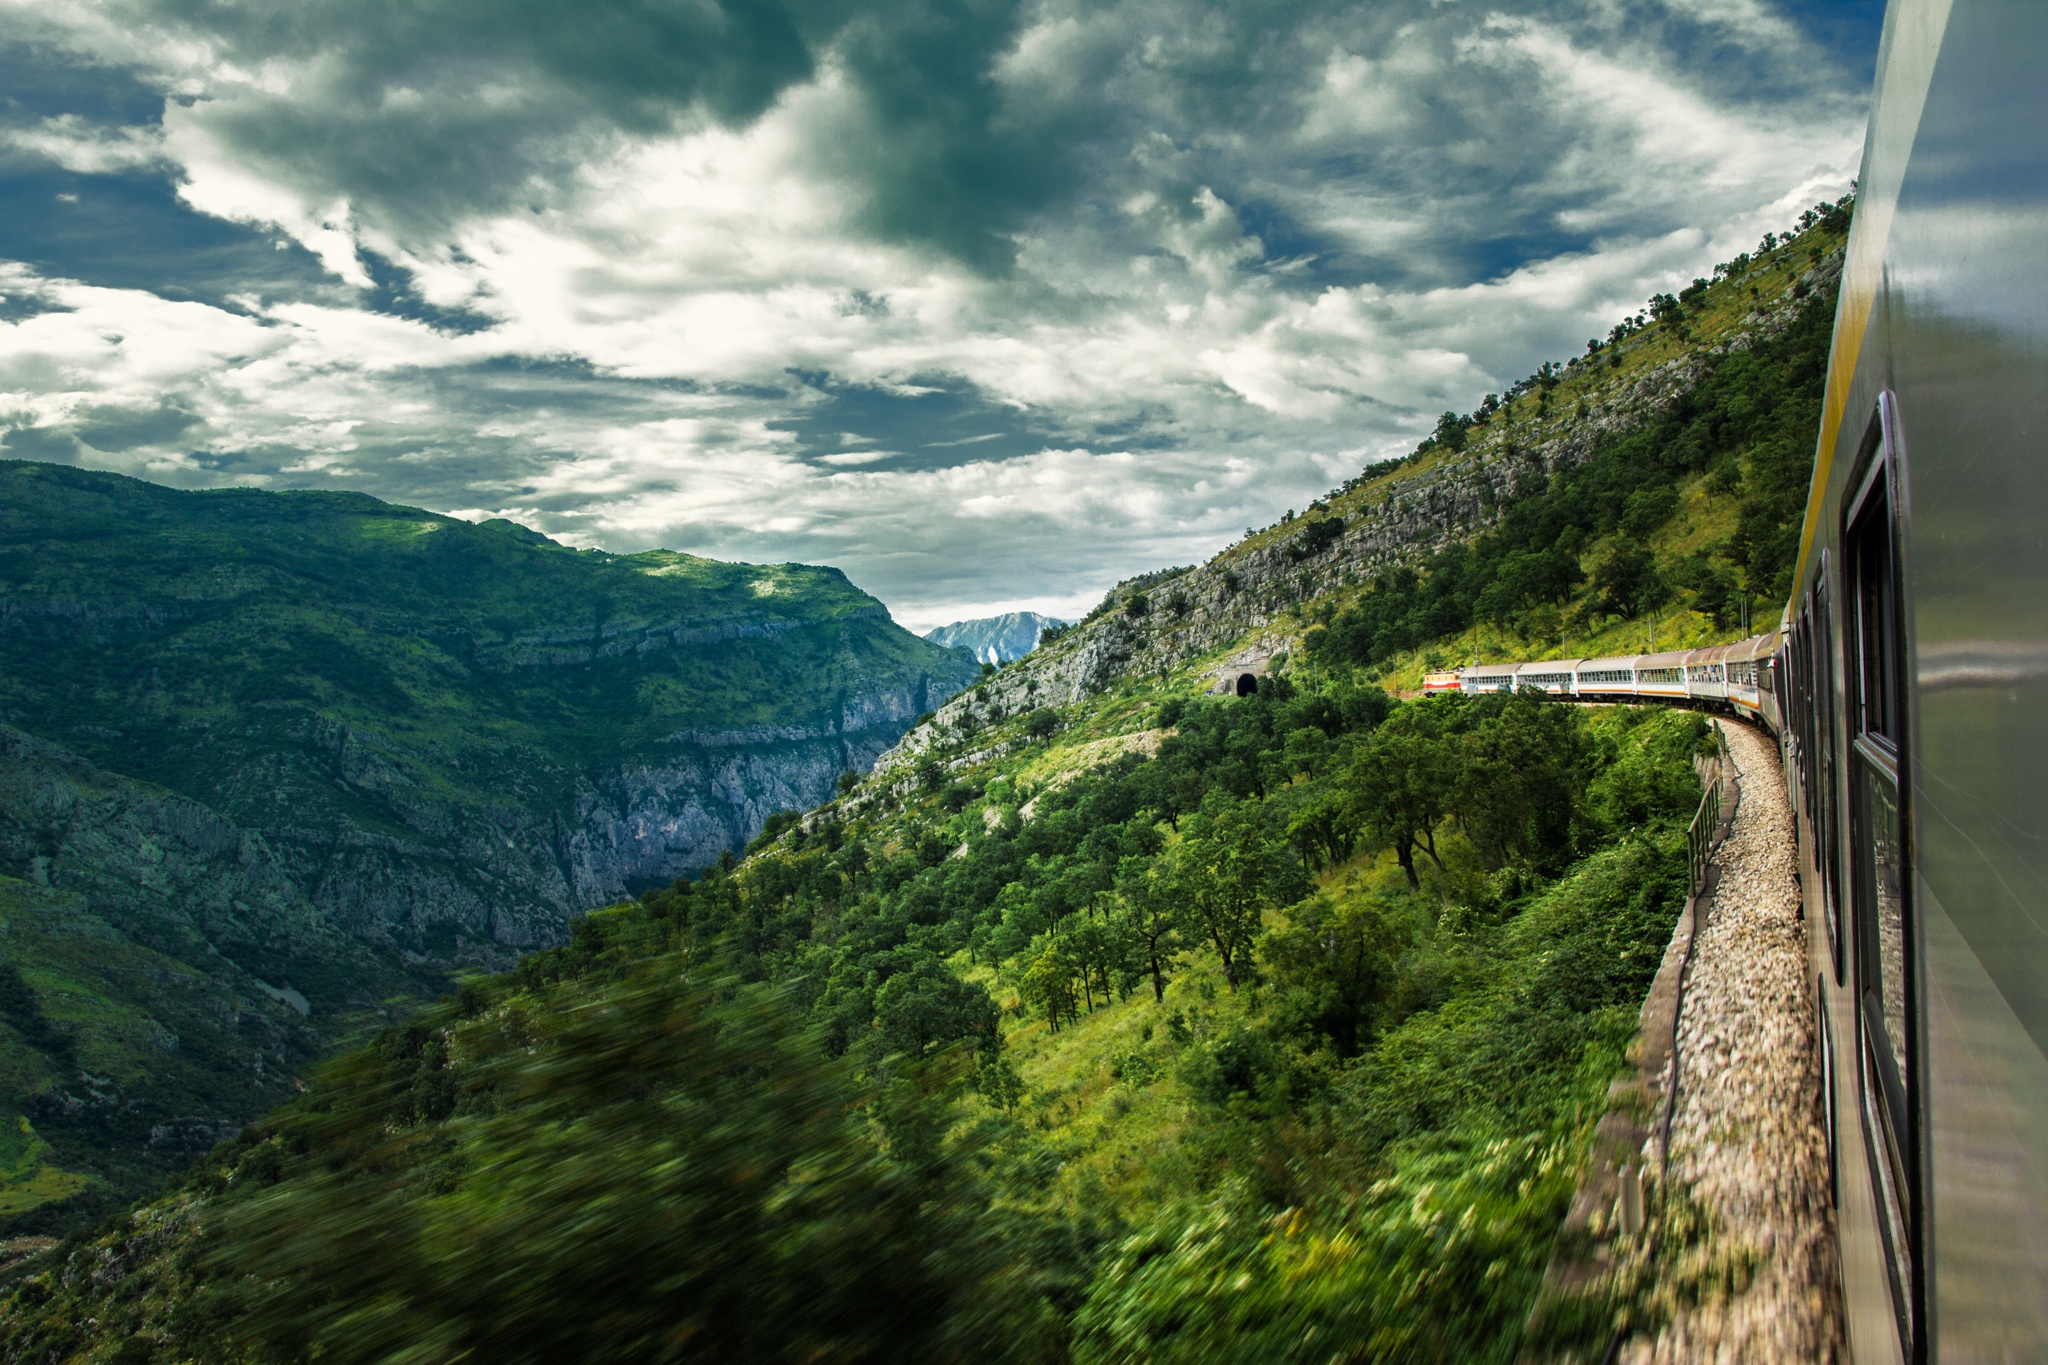 Фото обои экрана блокировки. Железная дорога в горах. Поезд в горах. Windows интересное. Мост в горах.